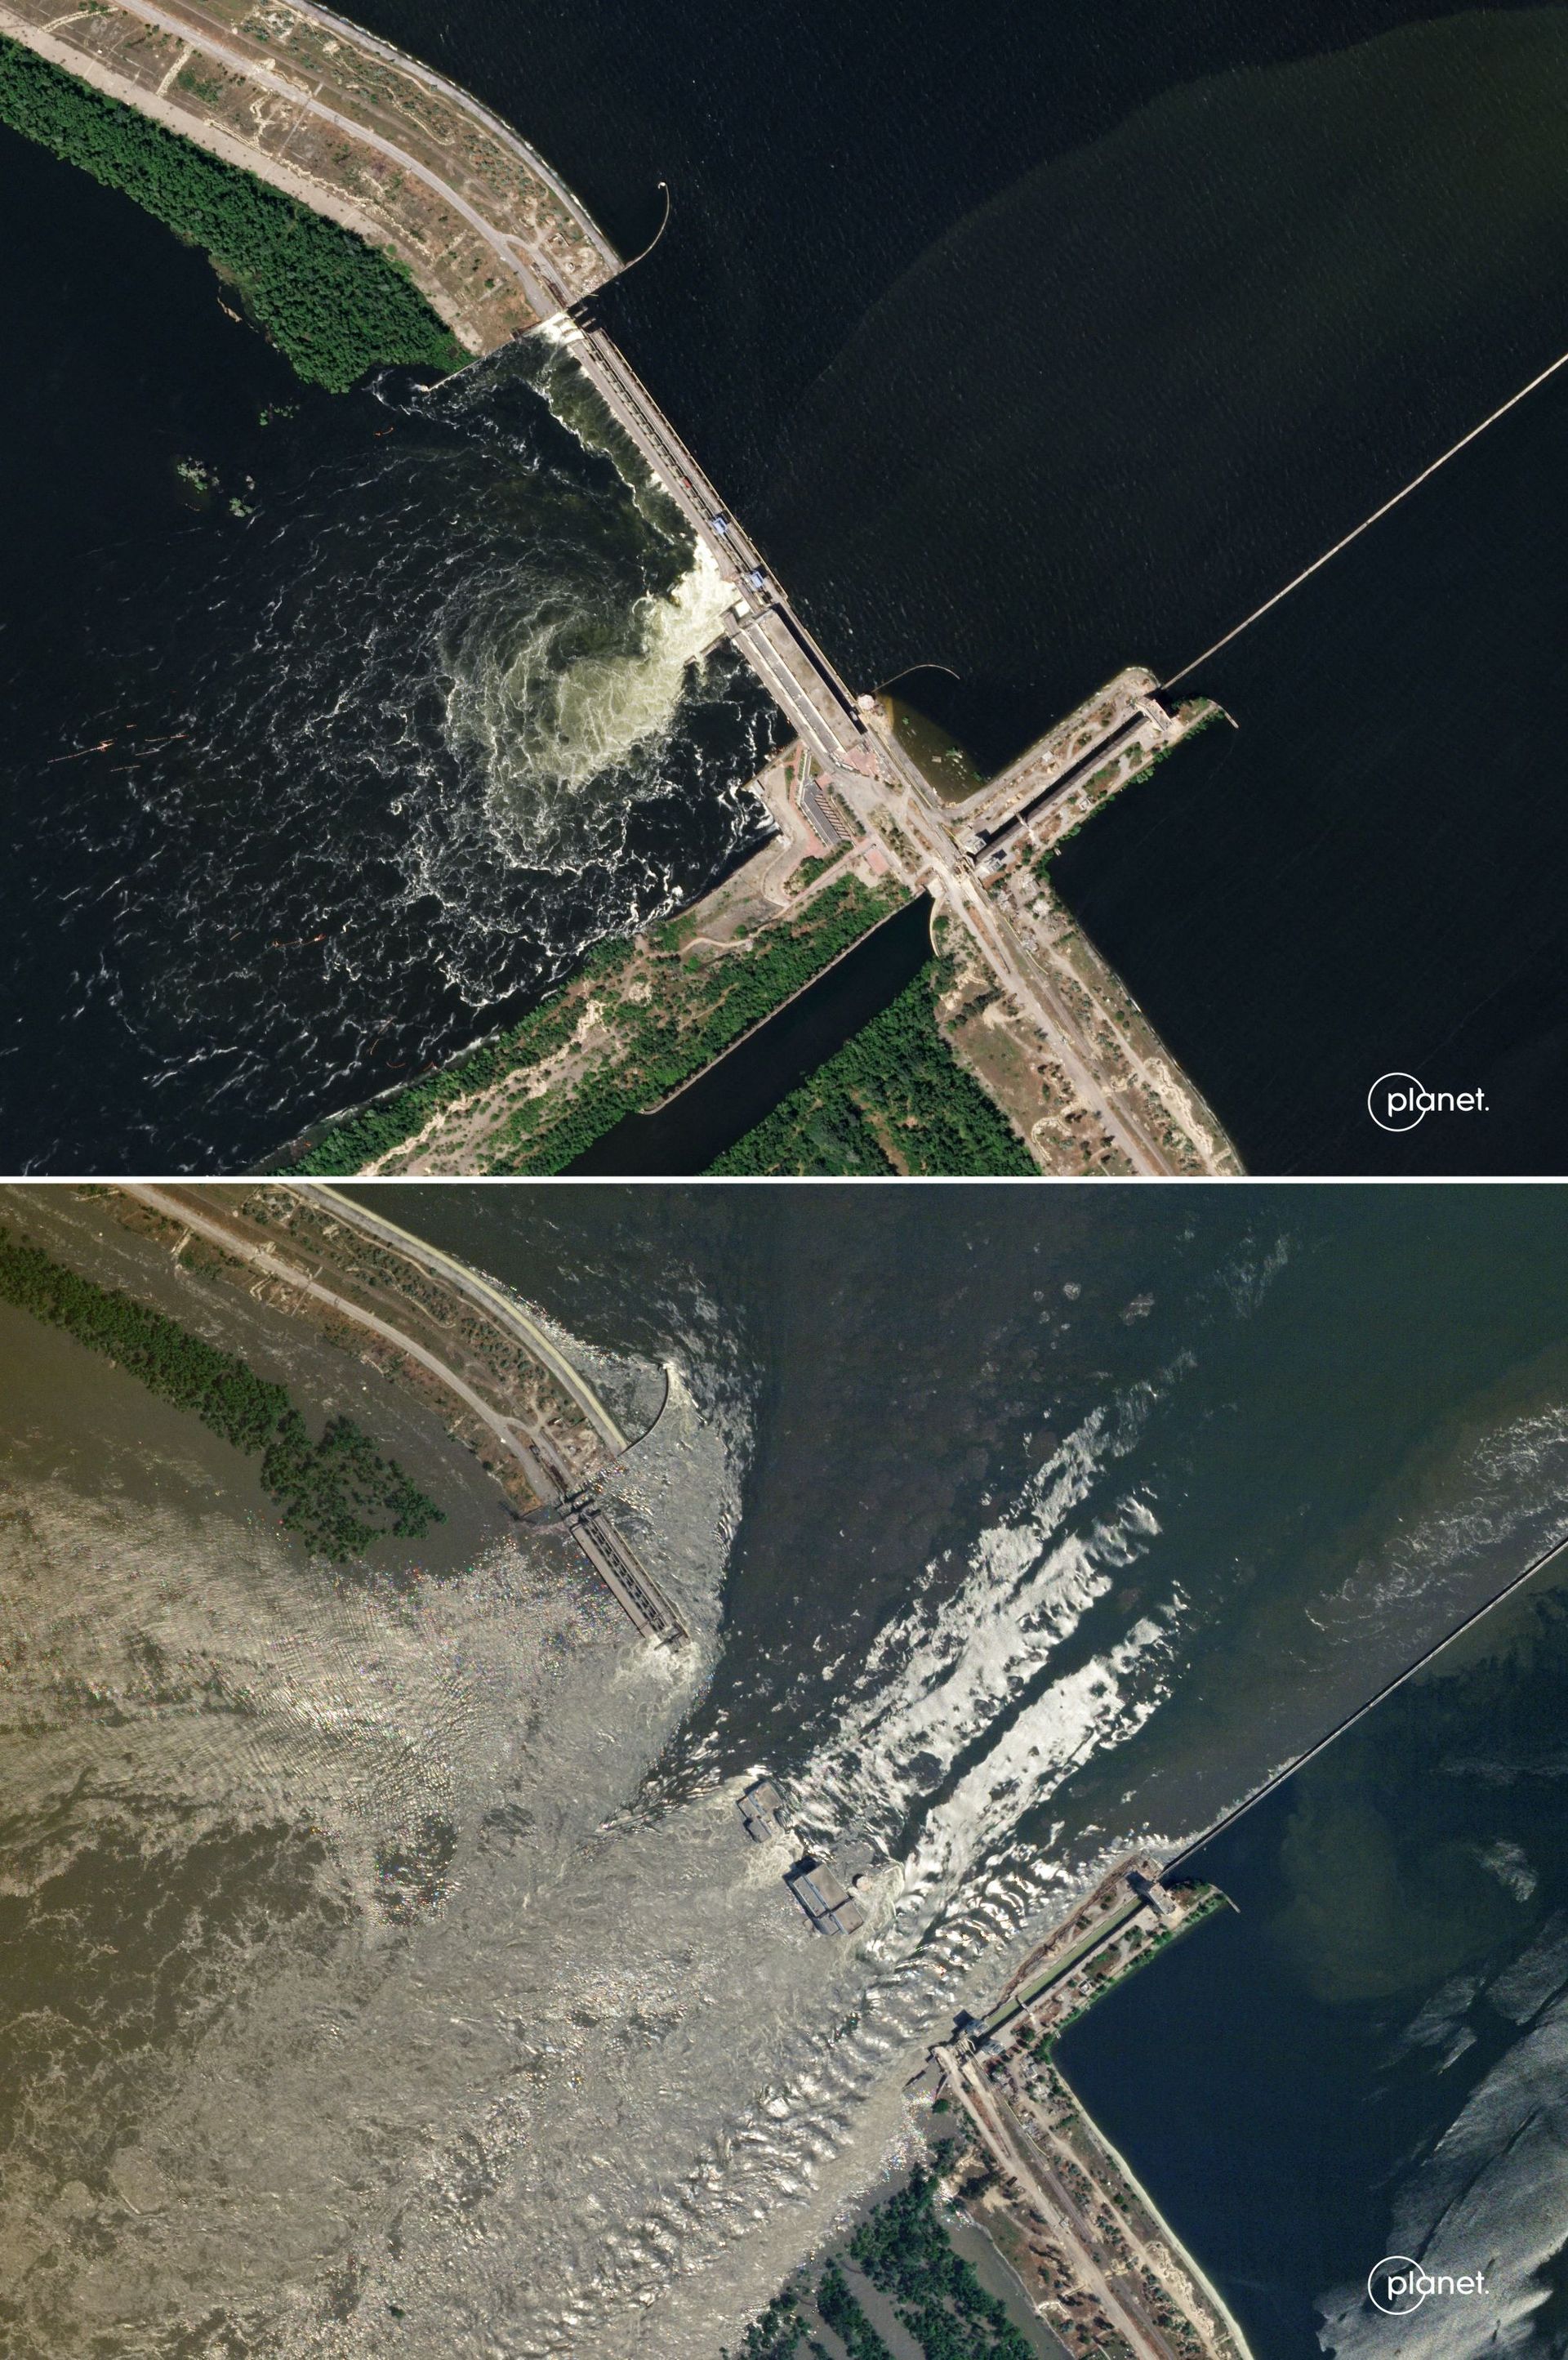 image SkySat prise le 4 juin 2023 et diffusée le 6 juin 2023 montrant le barrage HPP de Kakhovka non endommagé et (en bas) une image prise le 6 juin 2023 montrant de l'eau s'écoulant à travers le barrage HPP de Kakhovka endommagé.